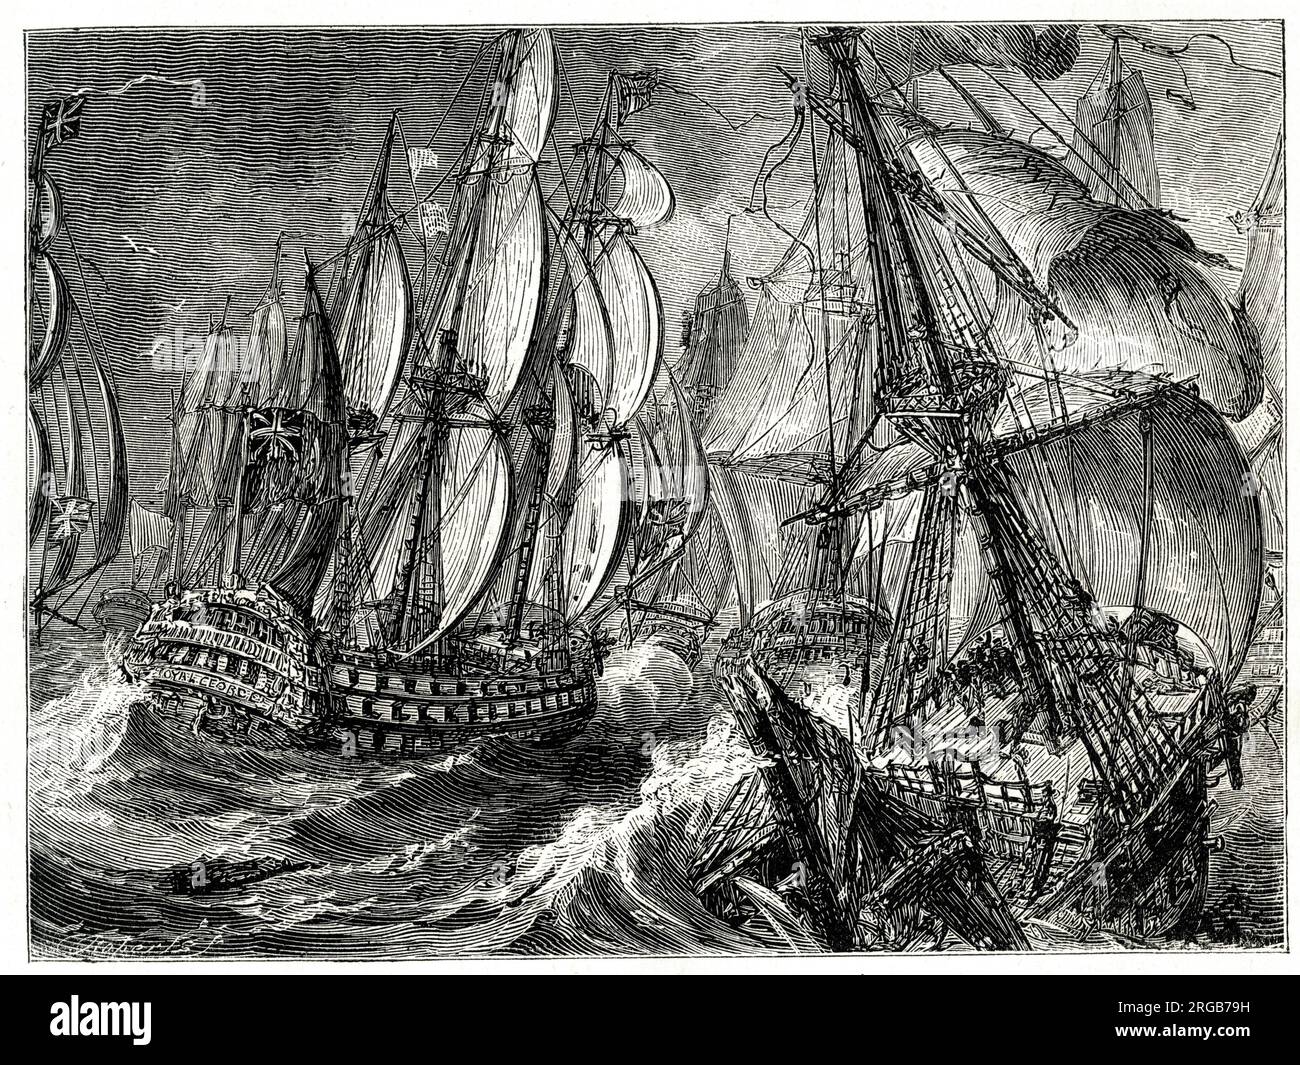 Batalla de Quiberon Bay (Bataille des Cardineaux), cerca de Saint Nazaire, Francia, una batalla naval librada entre los británicos y los franceses el 20 de noviembre de 1759, durante la Guerra de los Siete Años (1756-1763). Foto de stock